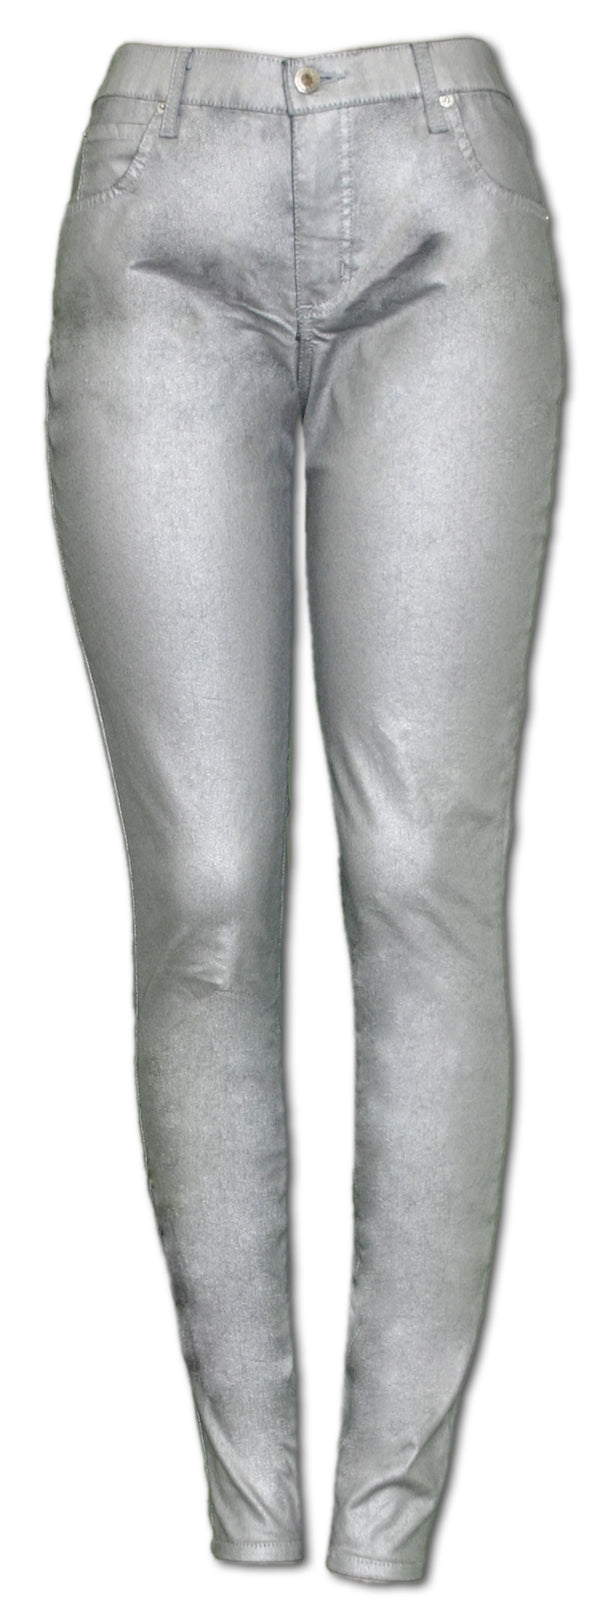 TrueSlim Silver Coated Jeggings – TrueSlim Jeans